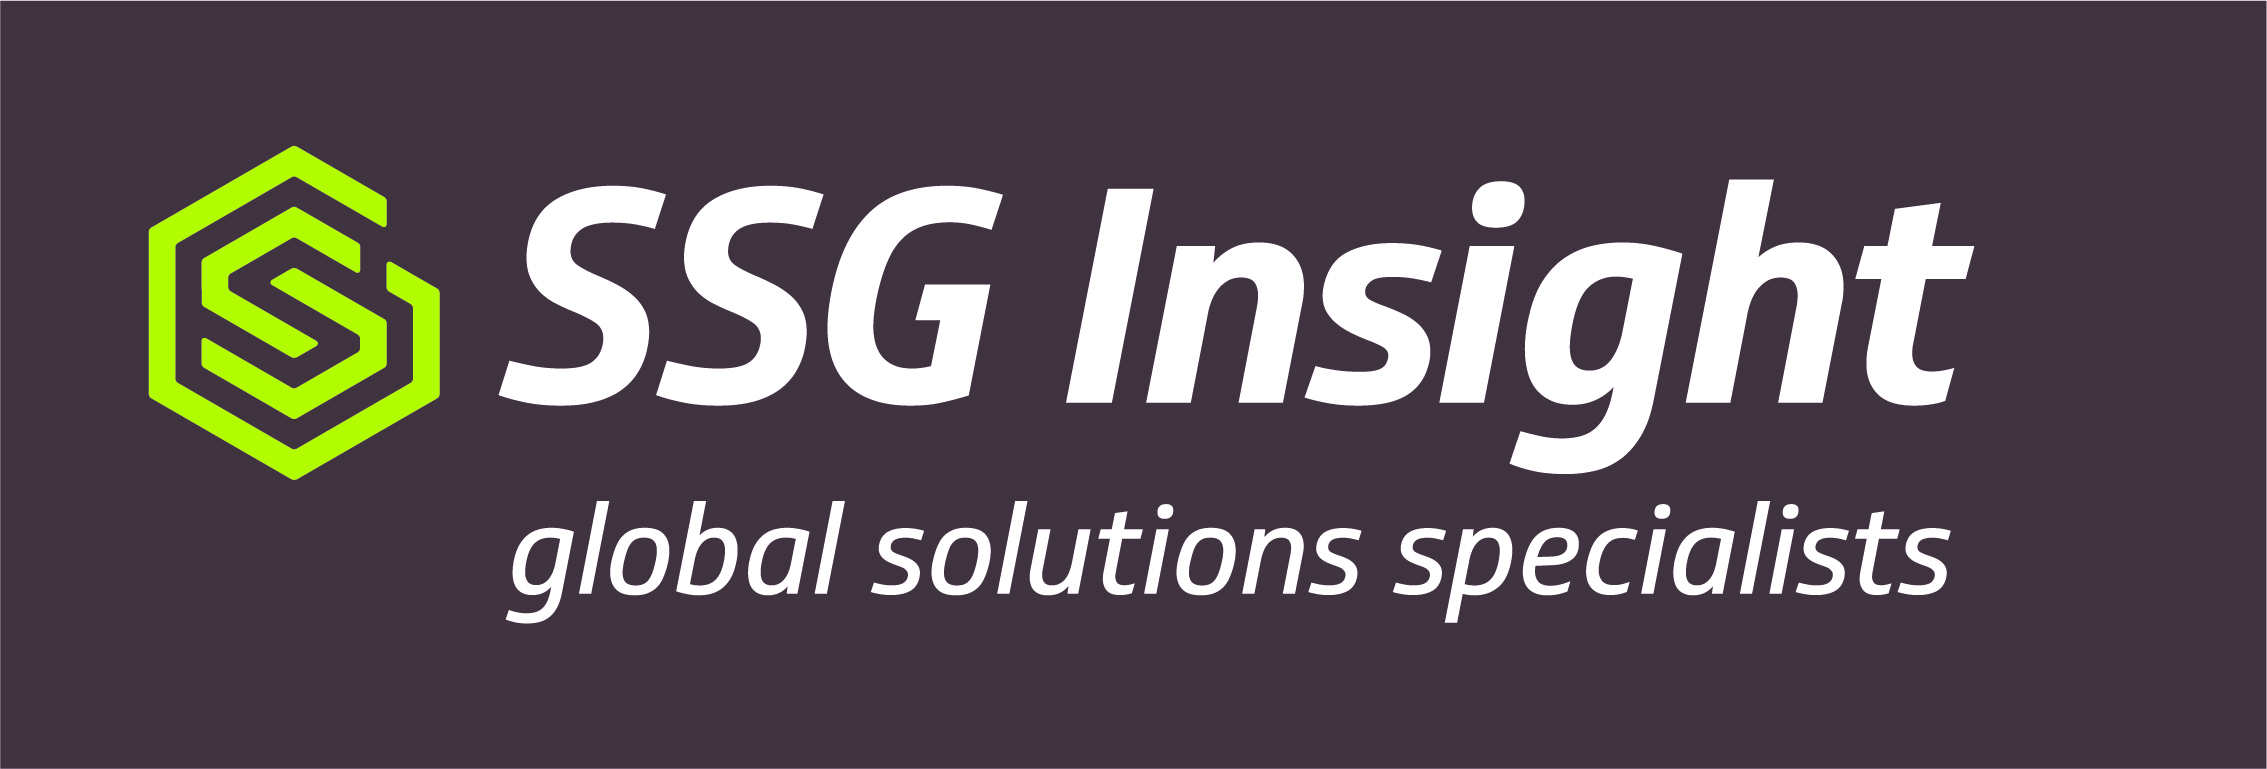 Logo of SSG Insight